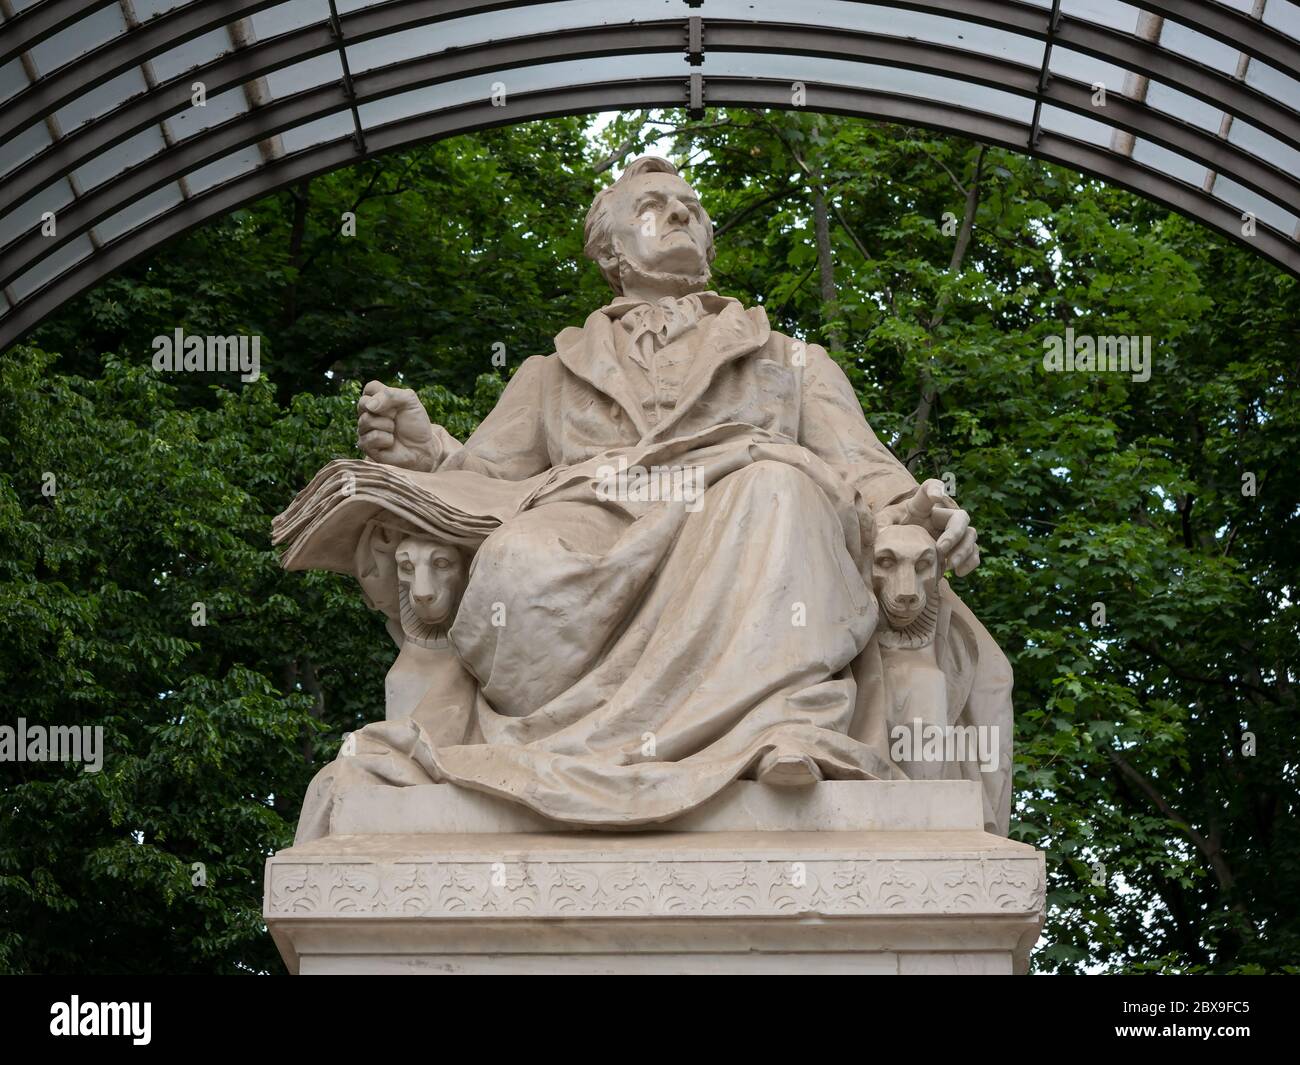 The Richard Wagner Monument, German: Richard-Wagner-Denkmal, Memorial Sculpture Located In Tiergarten In Berlin, Germany Stock Photo